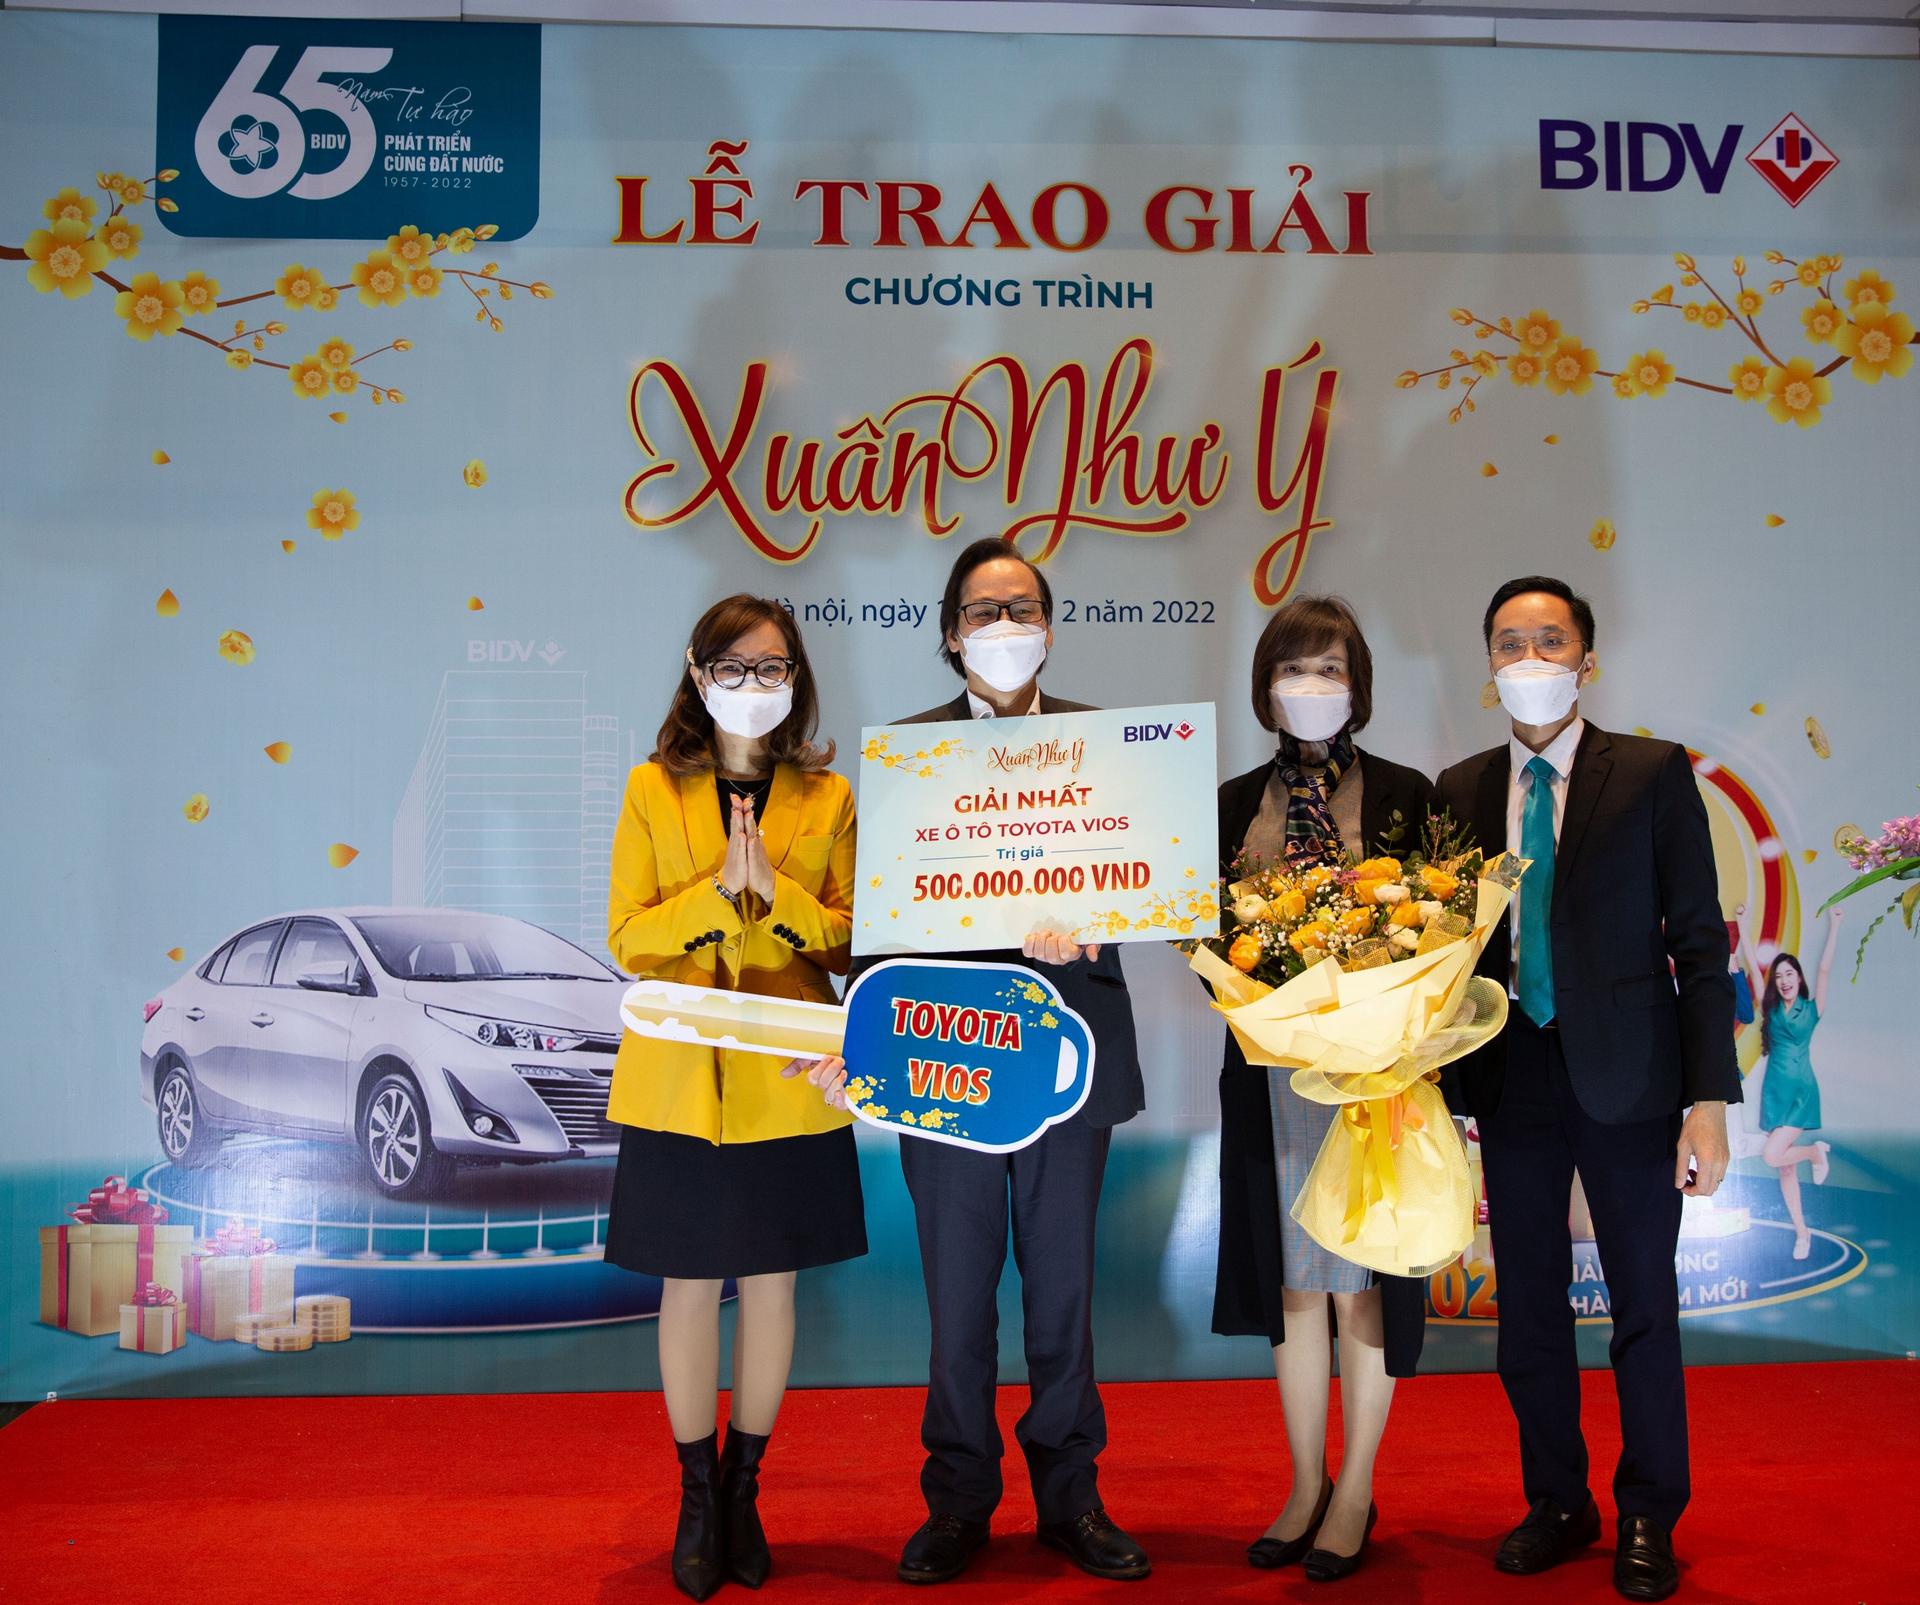 Tài chính - Ngân hàng - BIDV trao thưởng 500 triệu đồng chương trình Xuân Như Ý